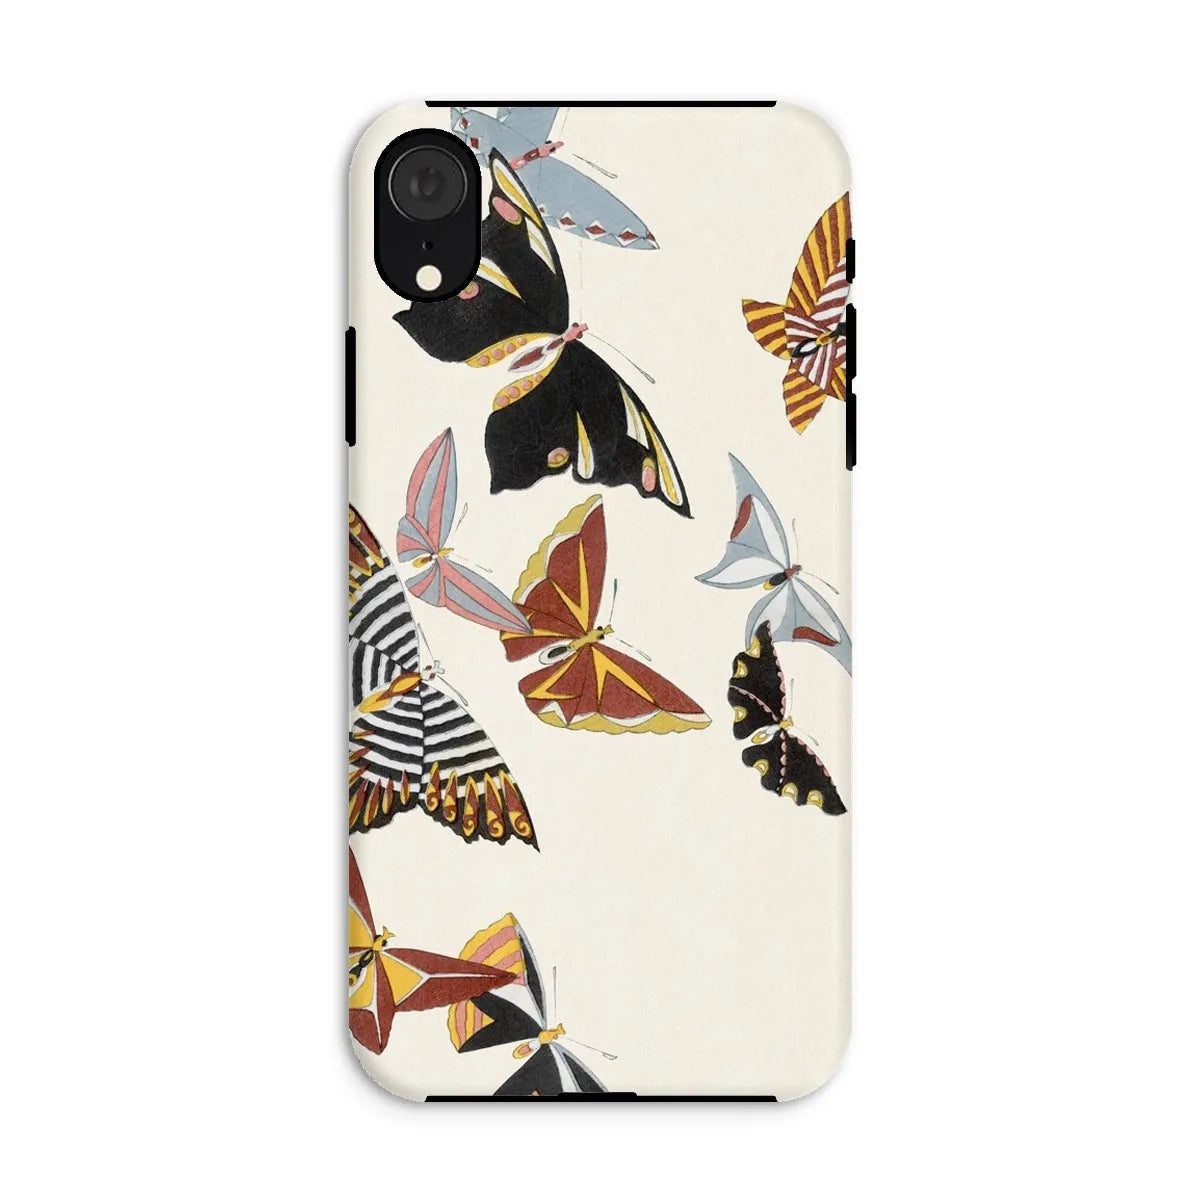 Japanese Butterfly Art Phone Case - Kamisaka Sekka - Iphone Xr / Matte - Mobile Phone Cases - Aesthetic Art